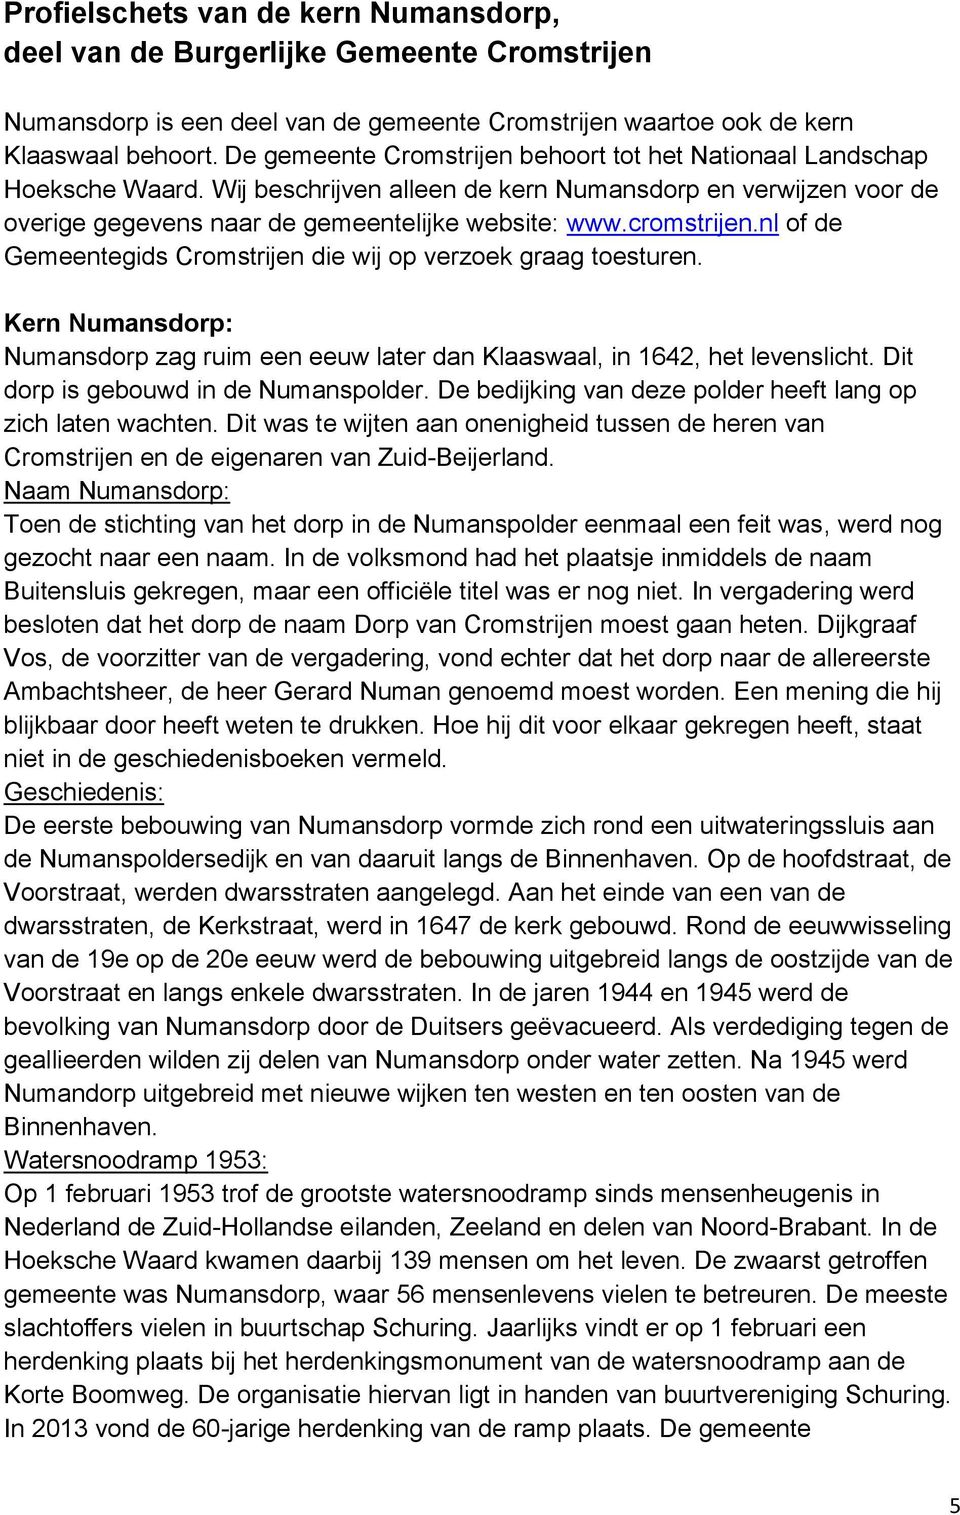 cromstrijen.nl of de Gemeentegids Cromstrijen die wij op verzoek graag toesturen. Kern Numansdorp: Numansdorp zag ruim een eeuw later dan Klaaswaal, in 1642, het levenslicht.